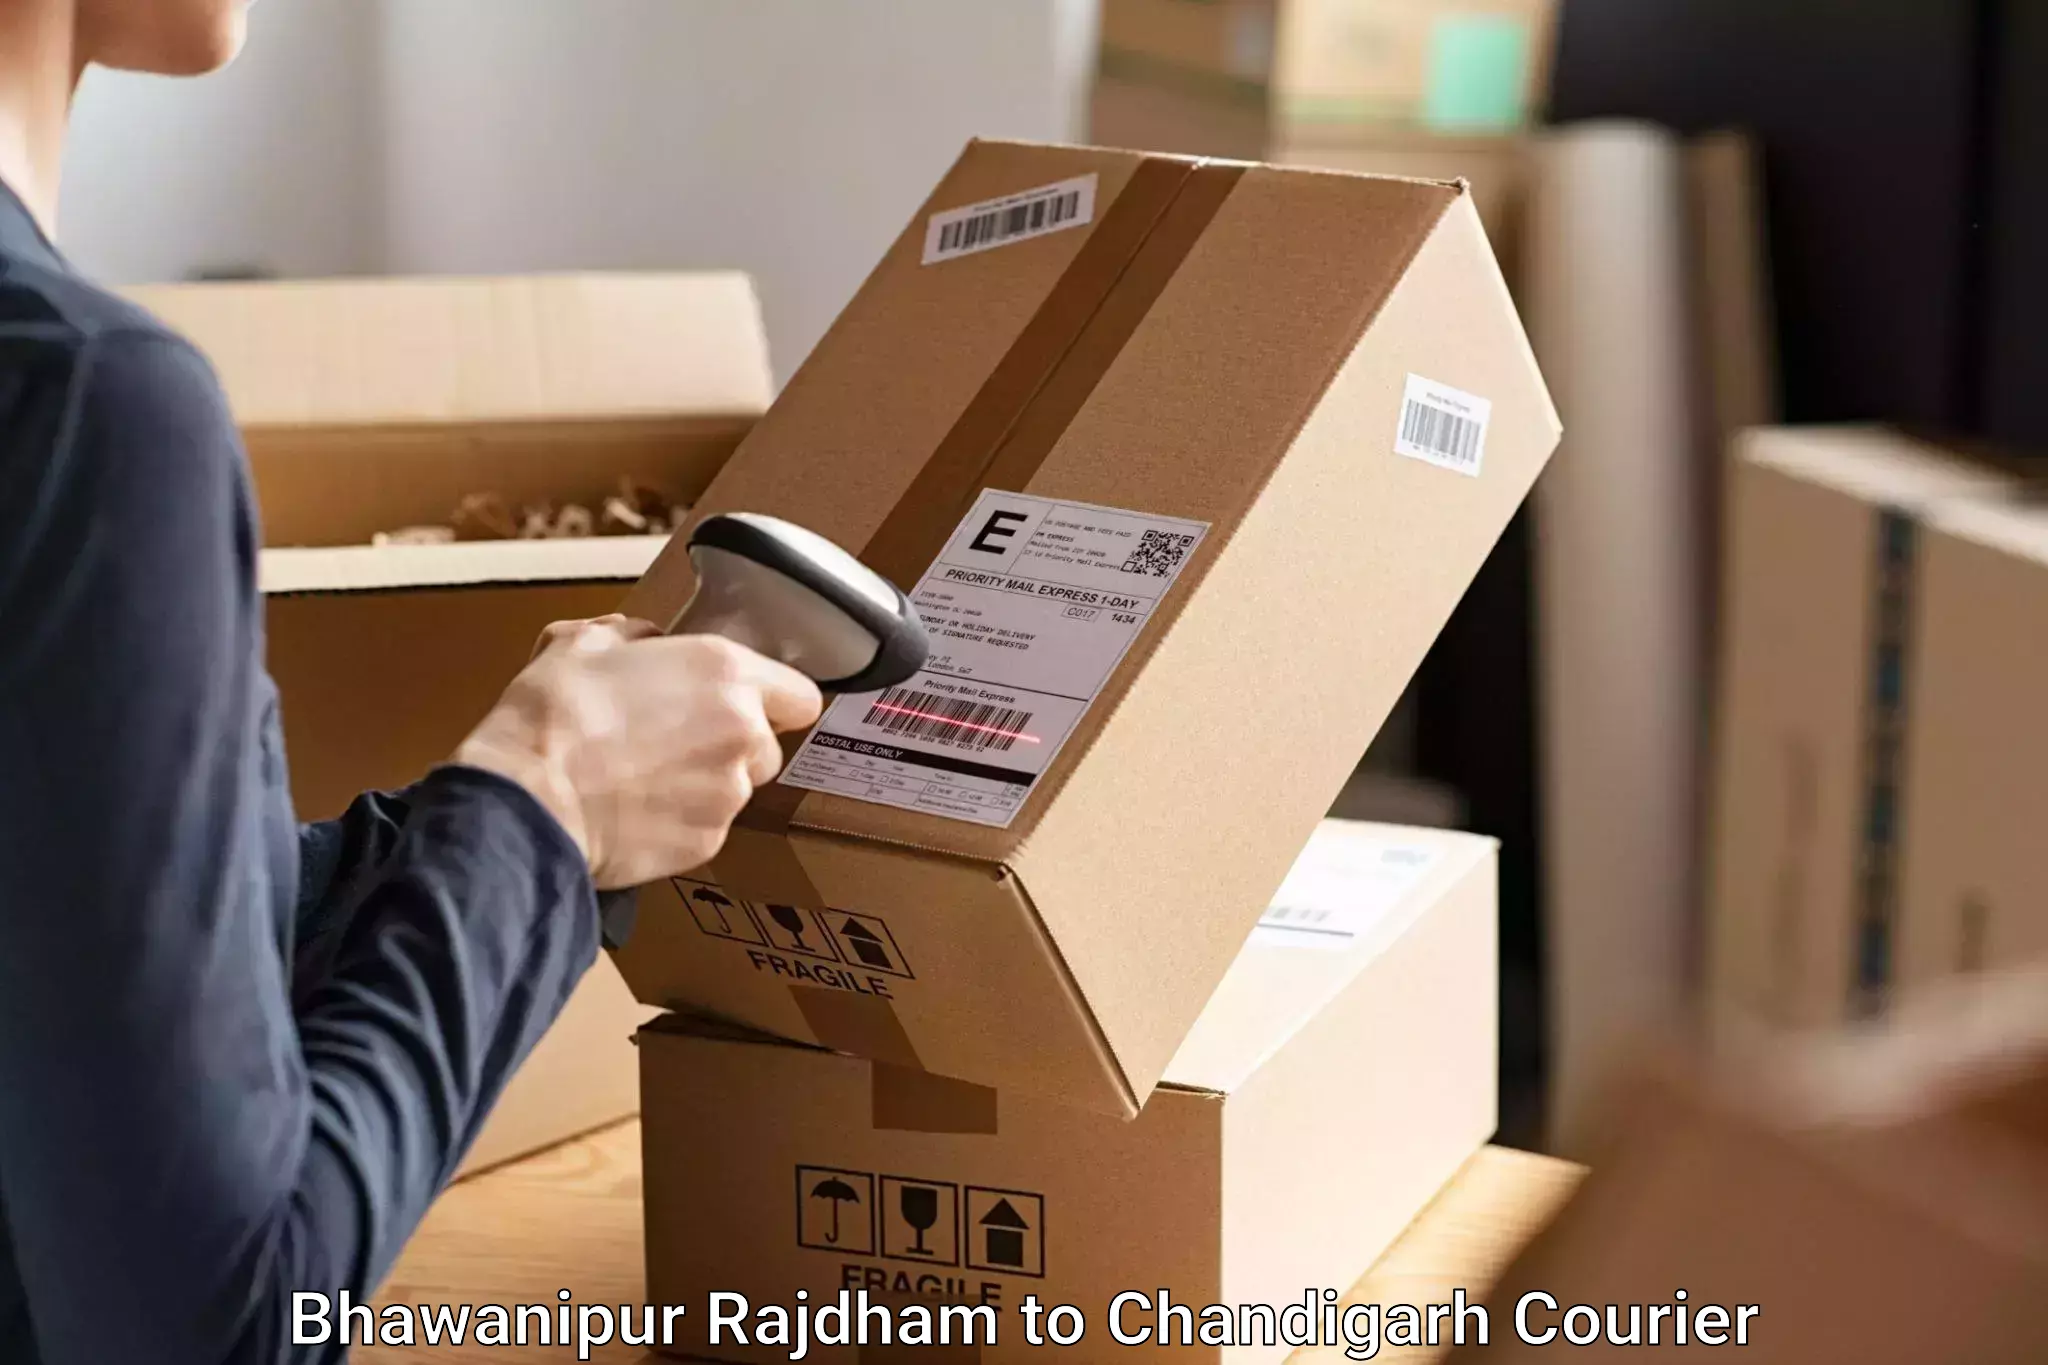 Luggage shipping planner Bhawanipur Rajdham to Chandigarh